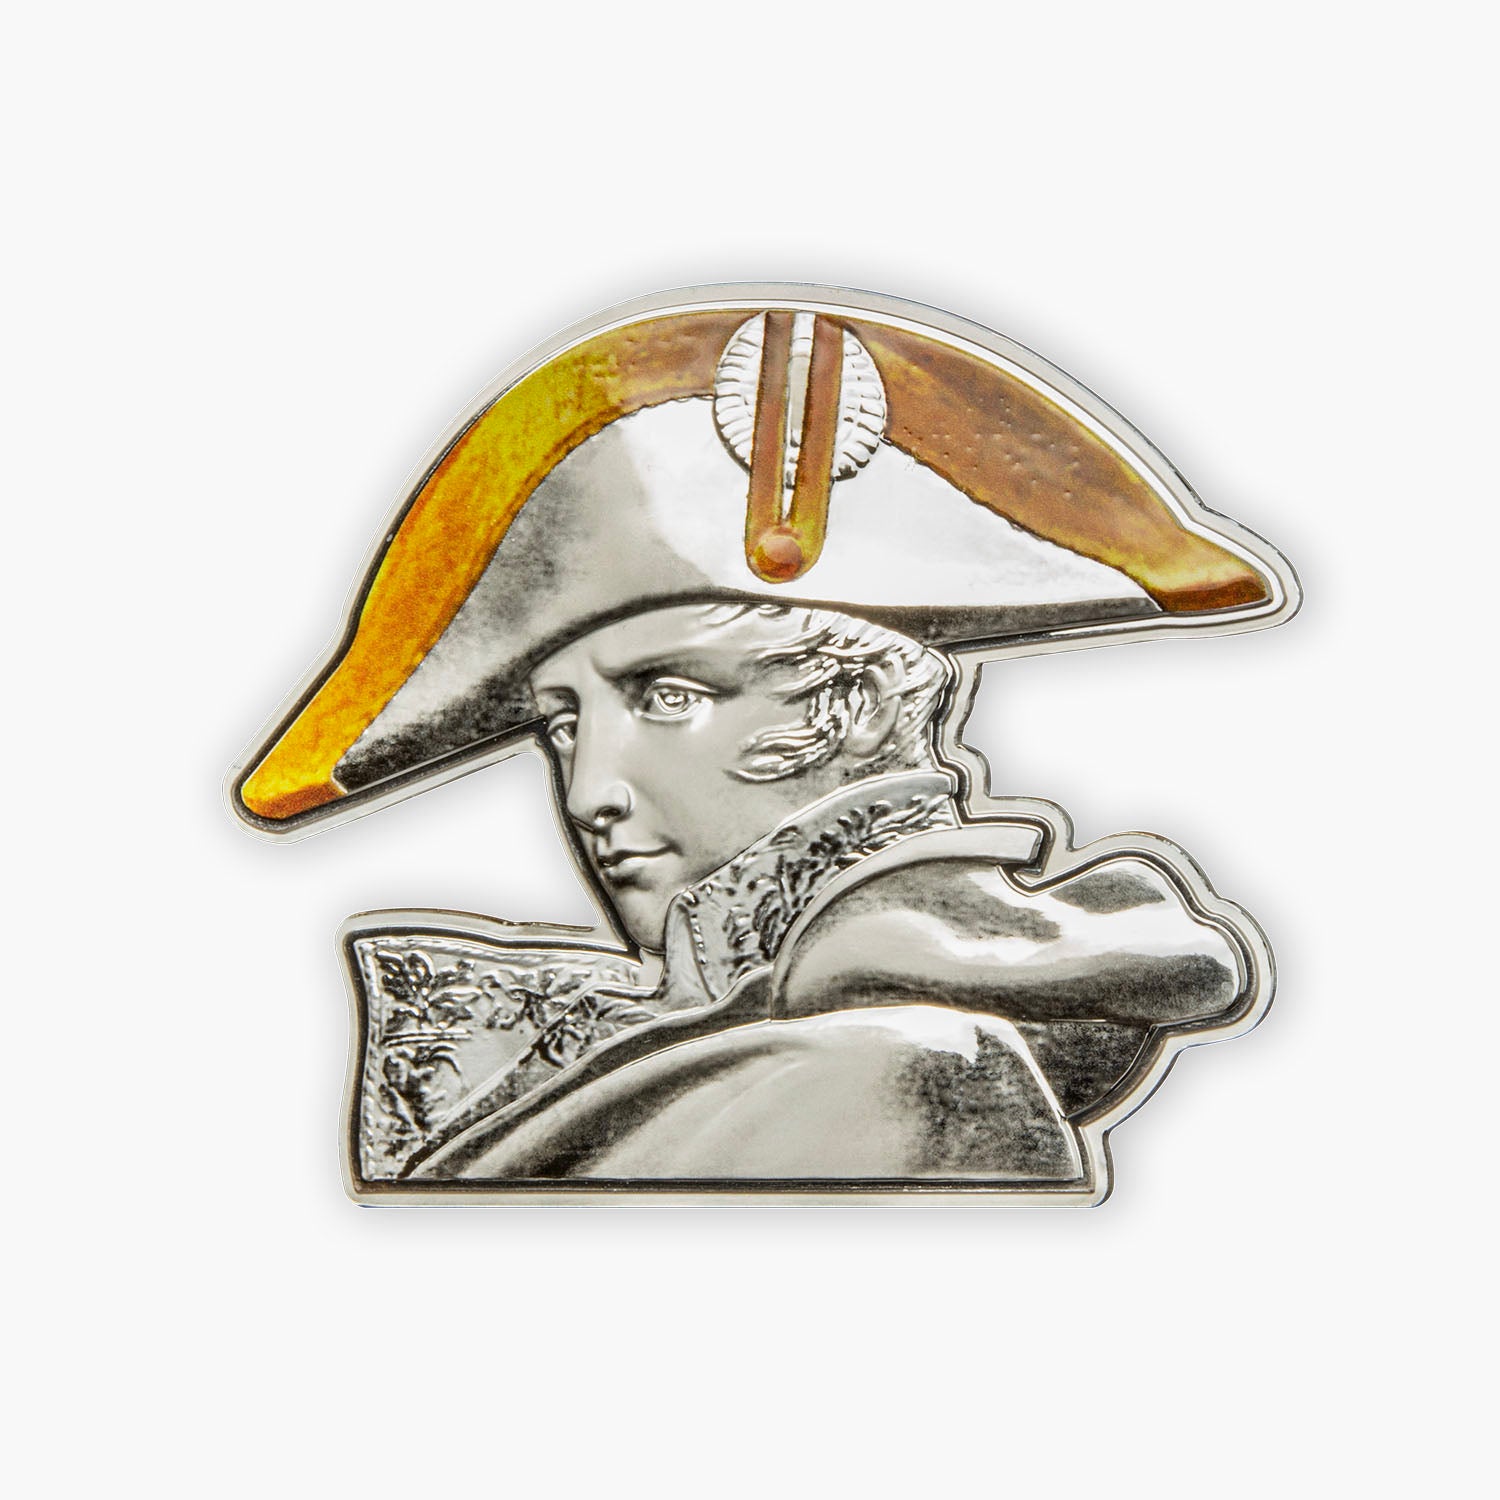 ナポレオン生誕 200 周年記念 5 オンス純銀貨